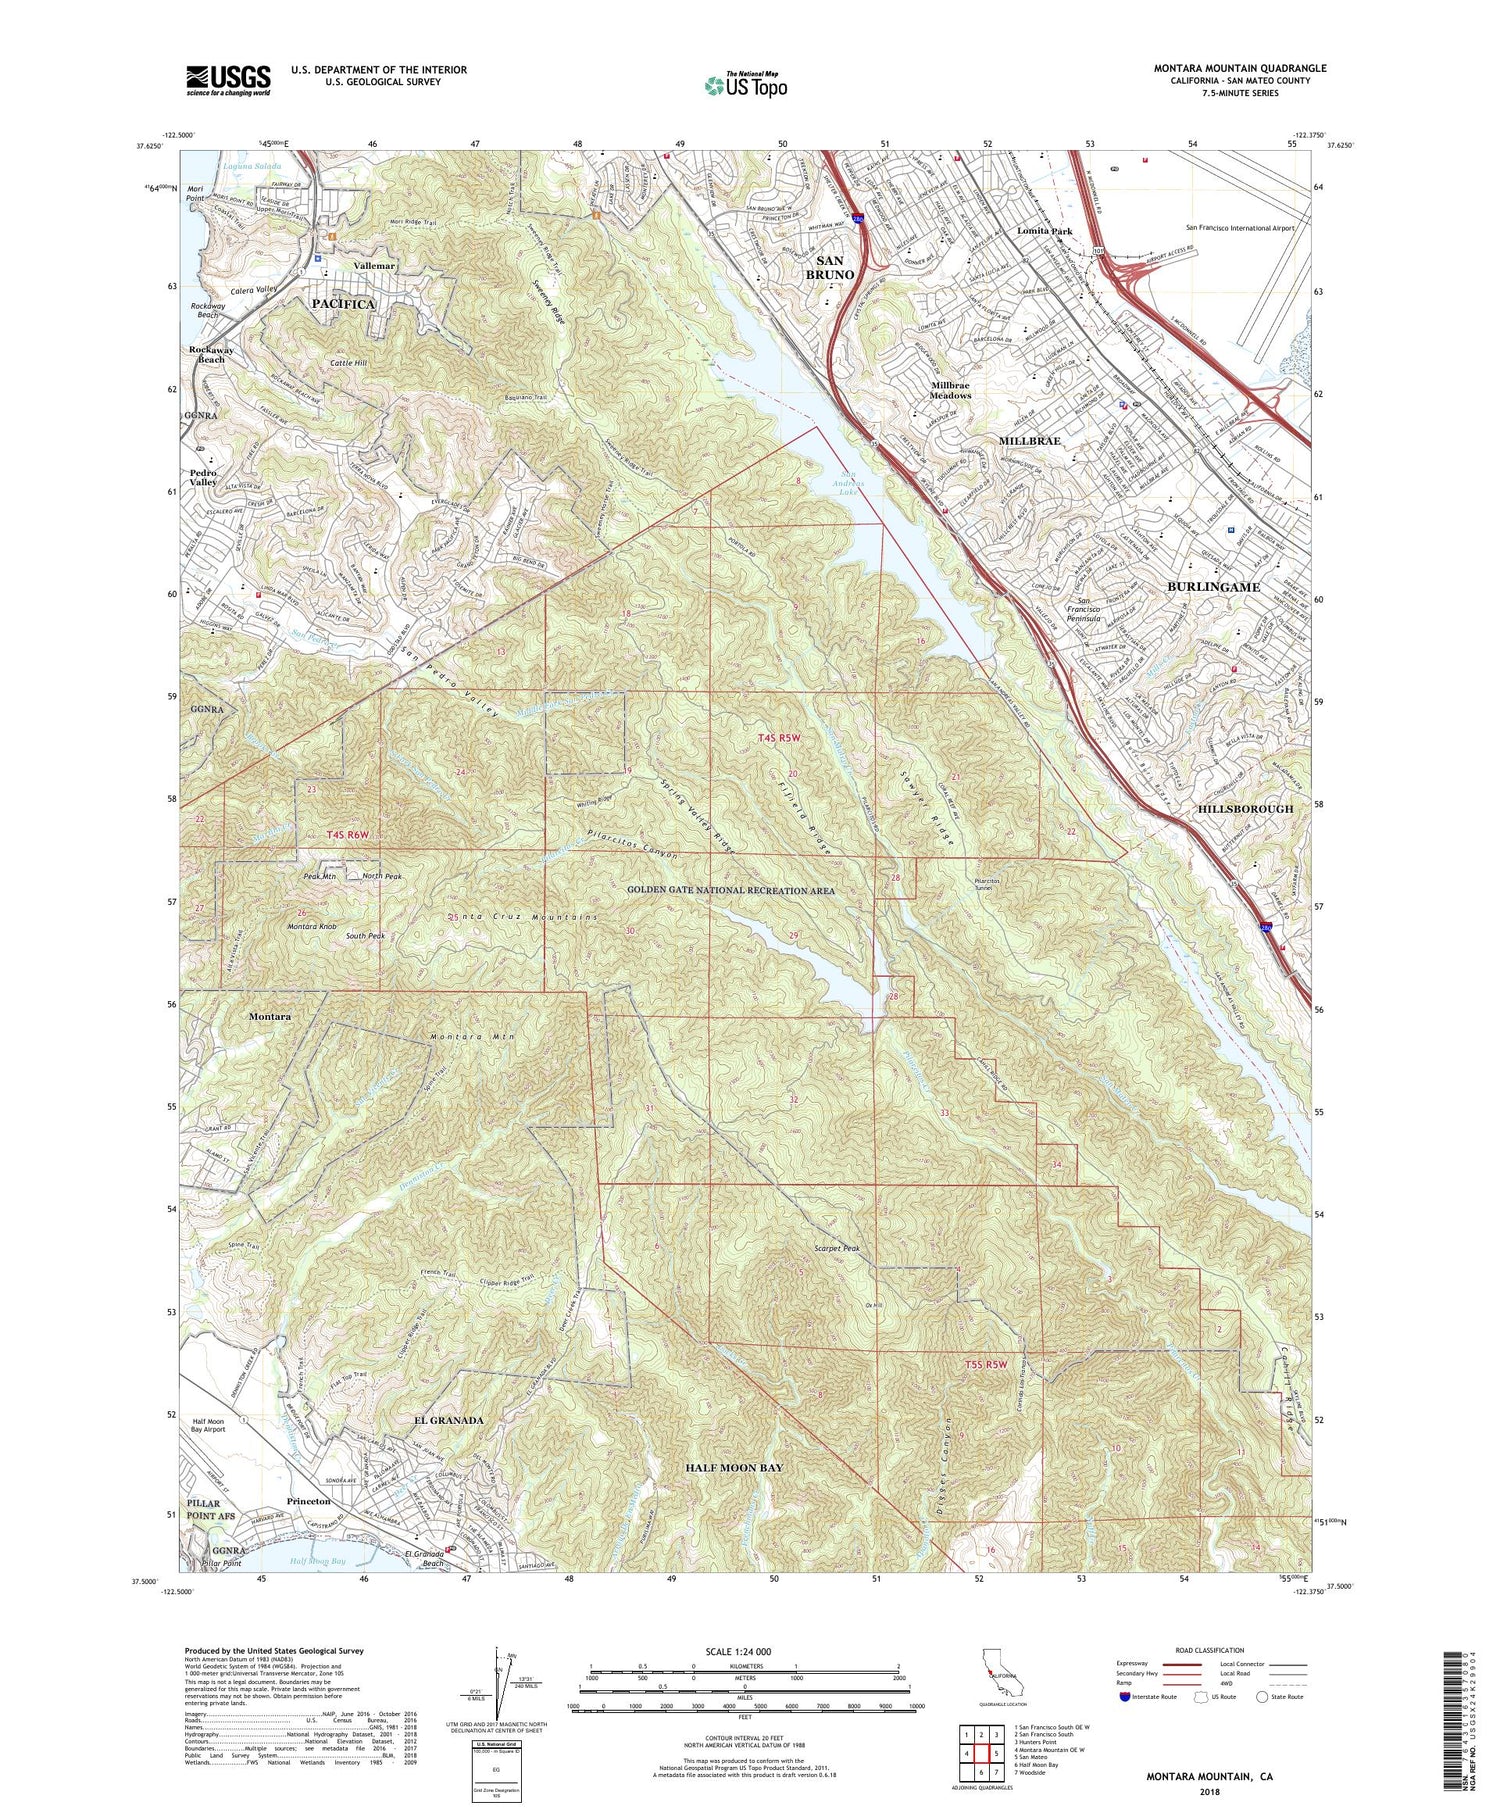 Montara Mountain California US Topo Map Image